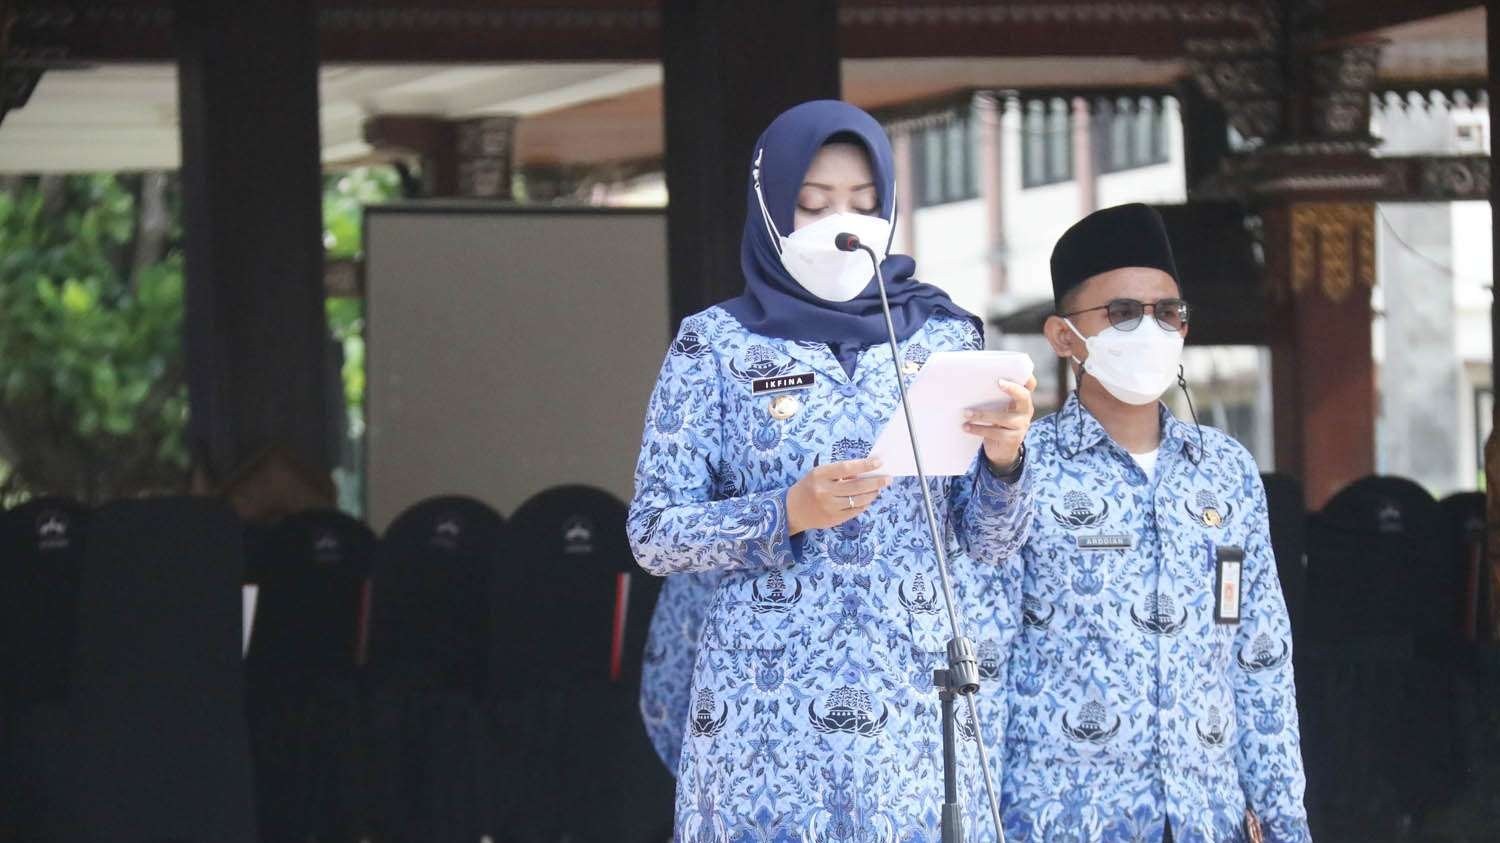 Bupati Mojokerto Ikfina Fahmawati pimpin Sumpah Janji Aparatur Sipil Negara (ASN) tahun 2022, pada Rabu 23 Februari 2022 pagi, di halaman Pemkab Mojokerto. (Foto: Istimewa)